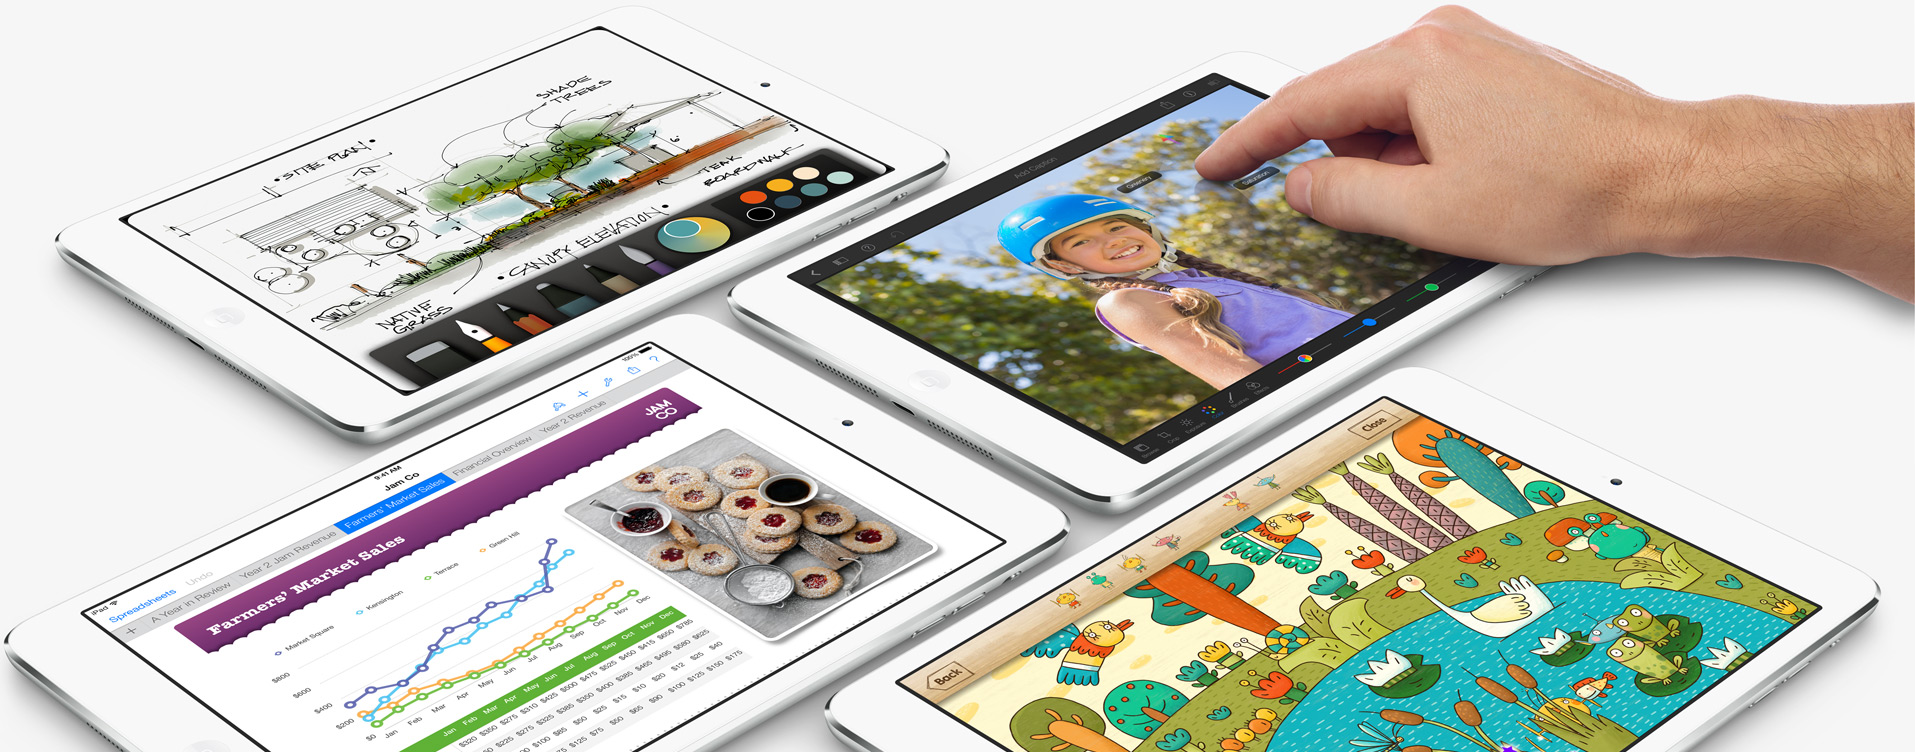 Por quanto os novos iPads chegarão ao Brasil? (Foto: Divulgação/Apple)